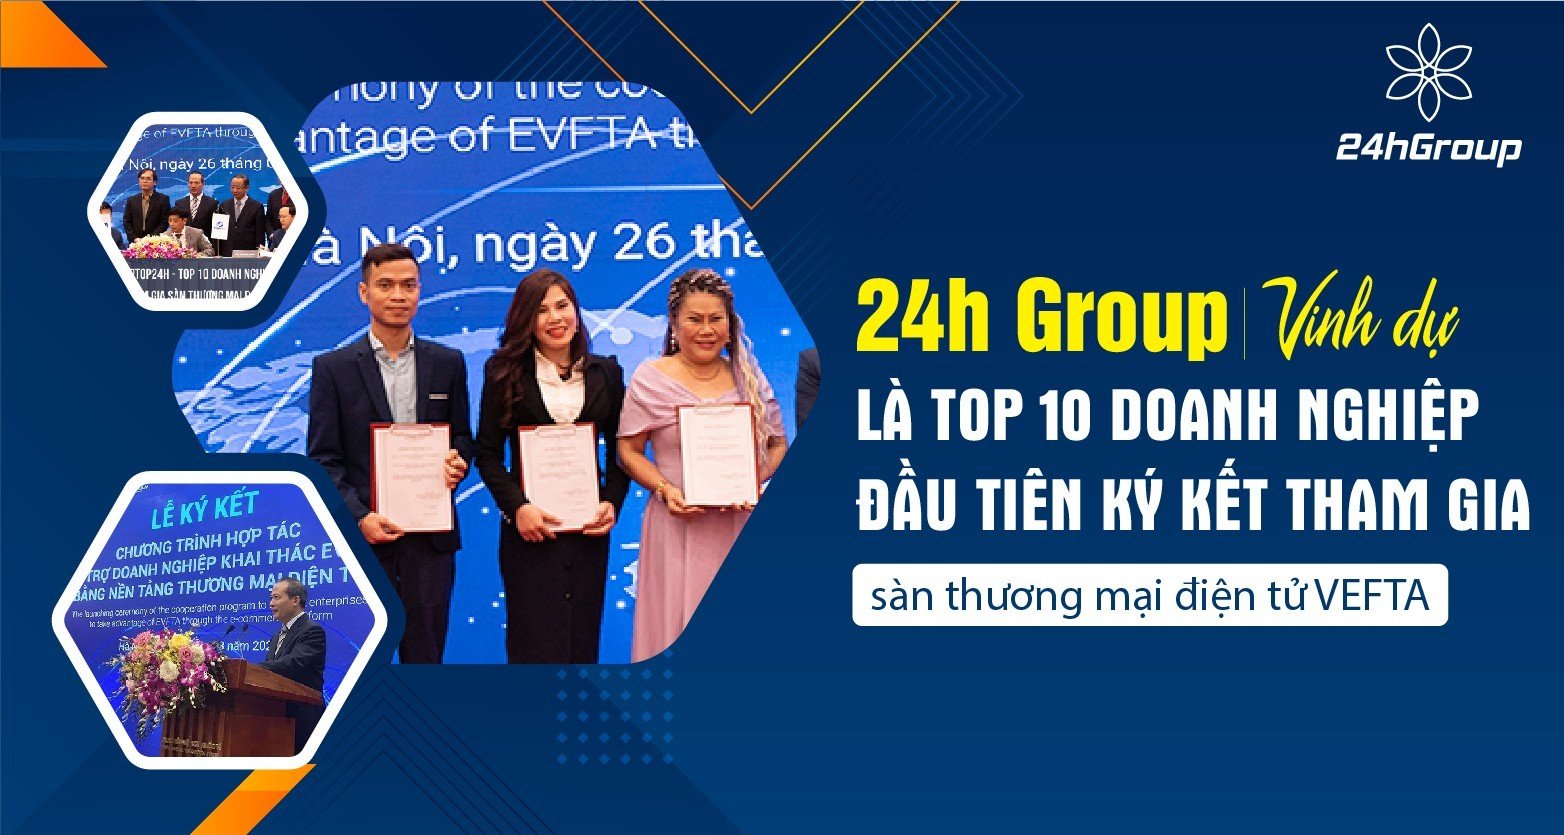  Top 10 doanh nghiệp đầu tiên ký kết tham gia sàn thương mại điện tử VEFTA